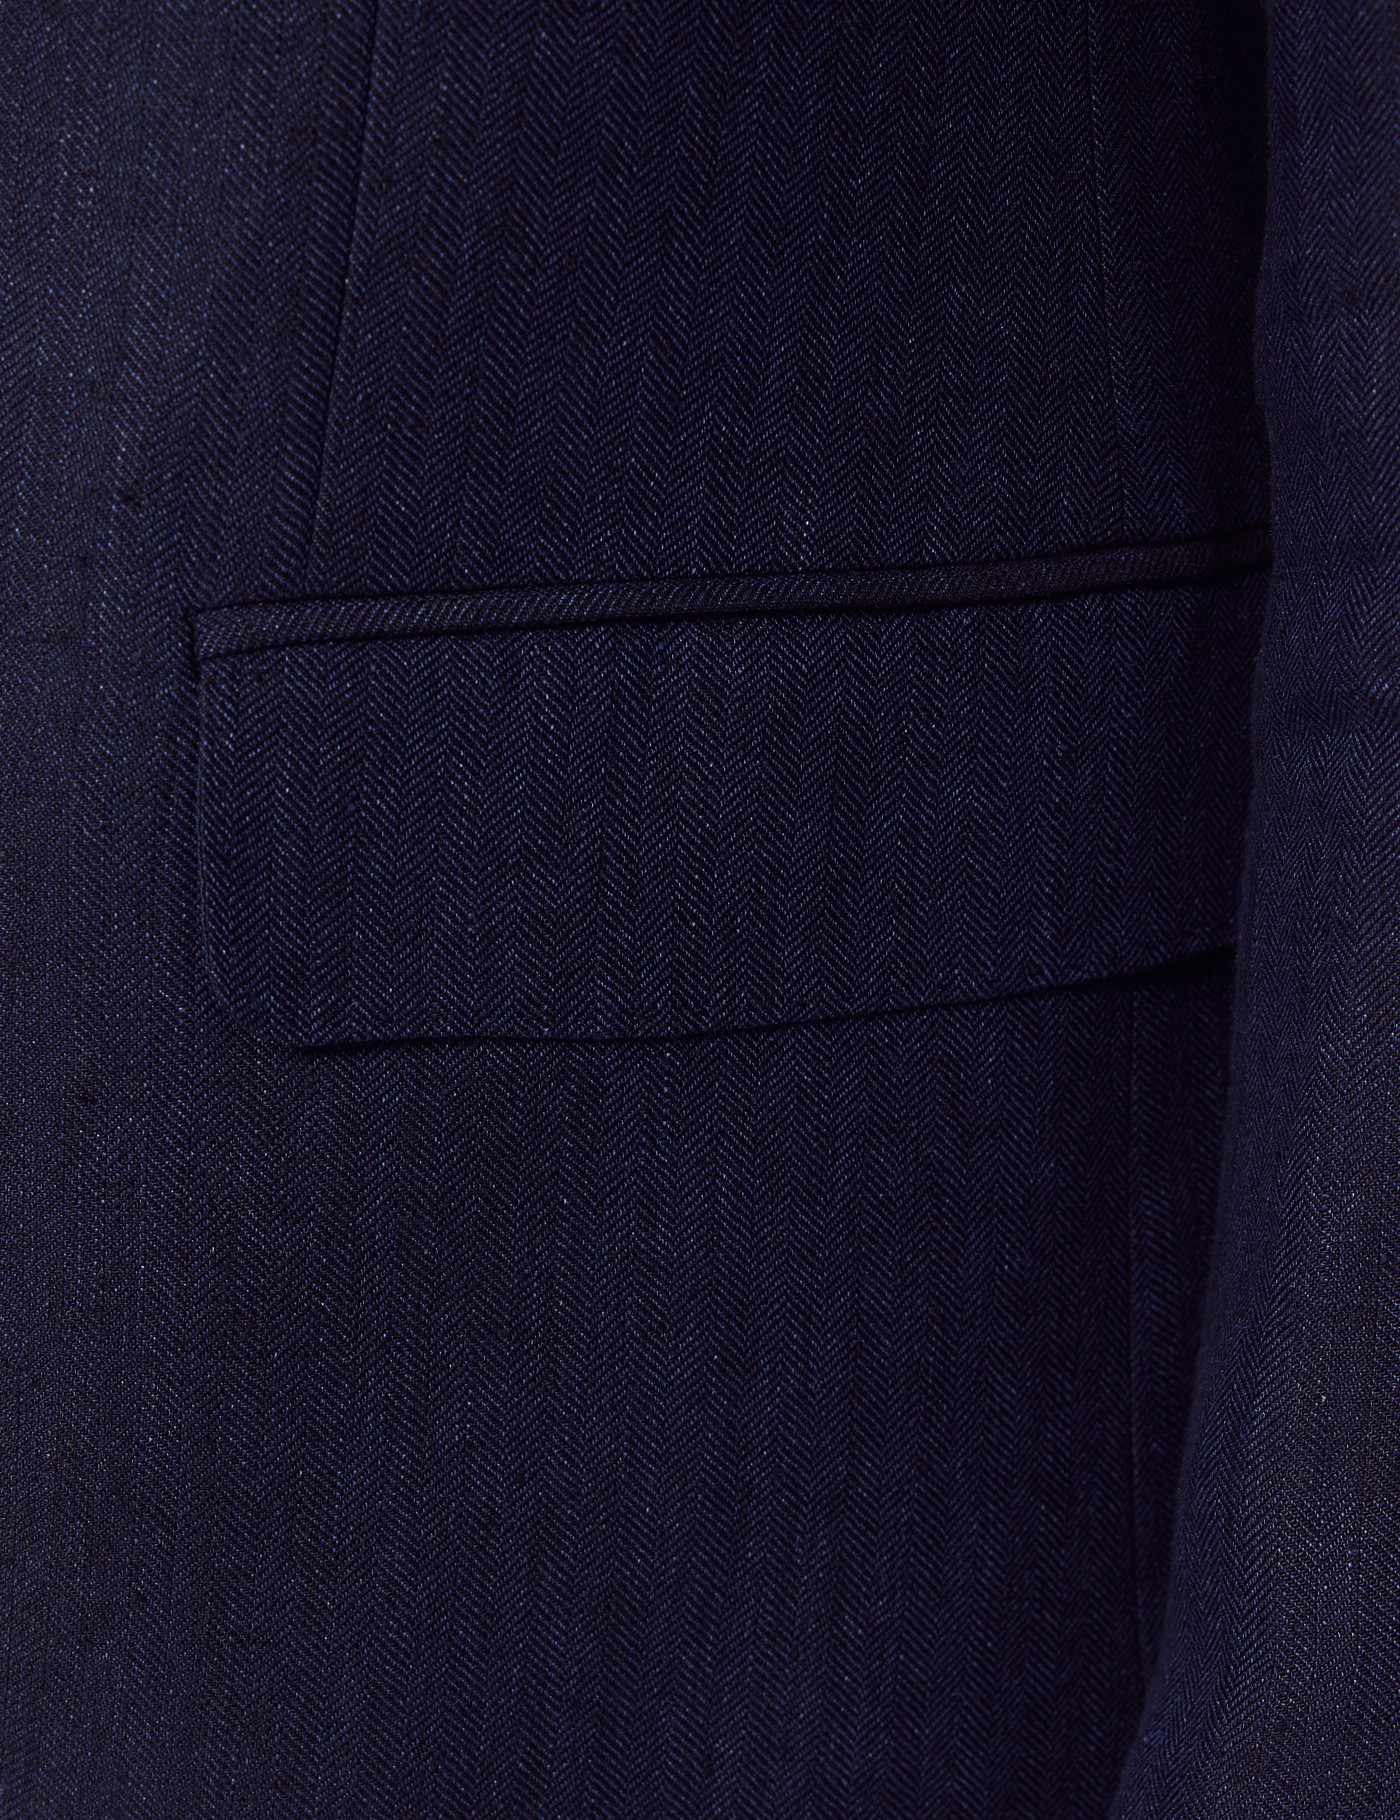 Men's Navy Herringbone 2 Piece Linen Tailored Italian Suit